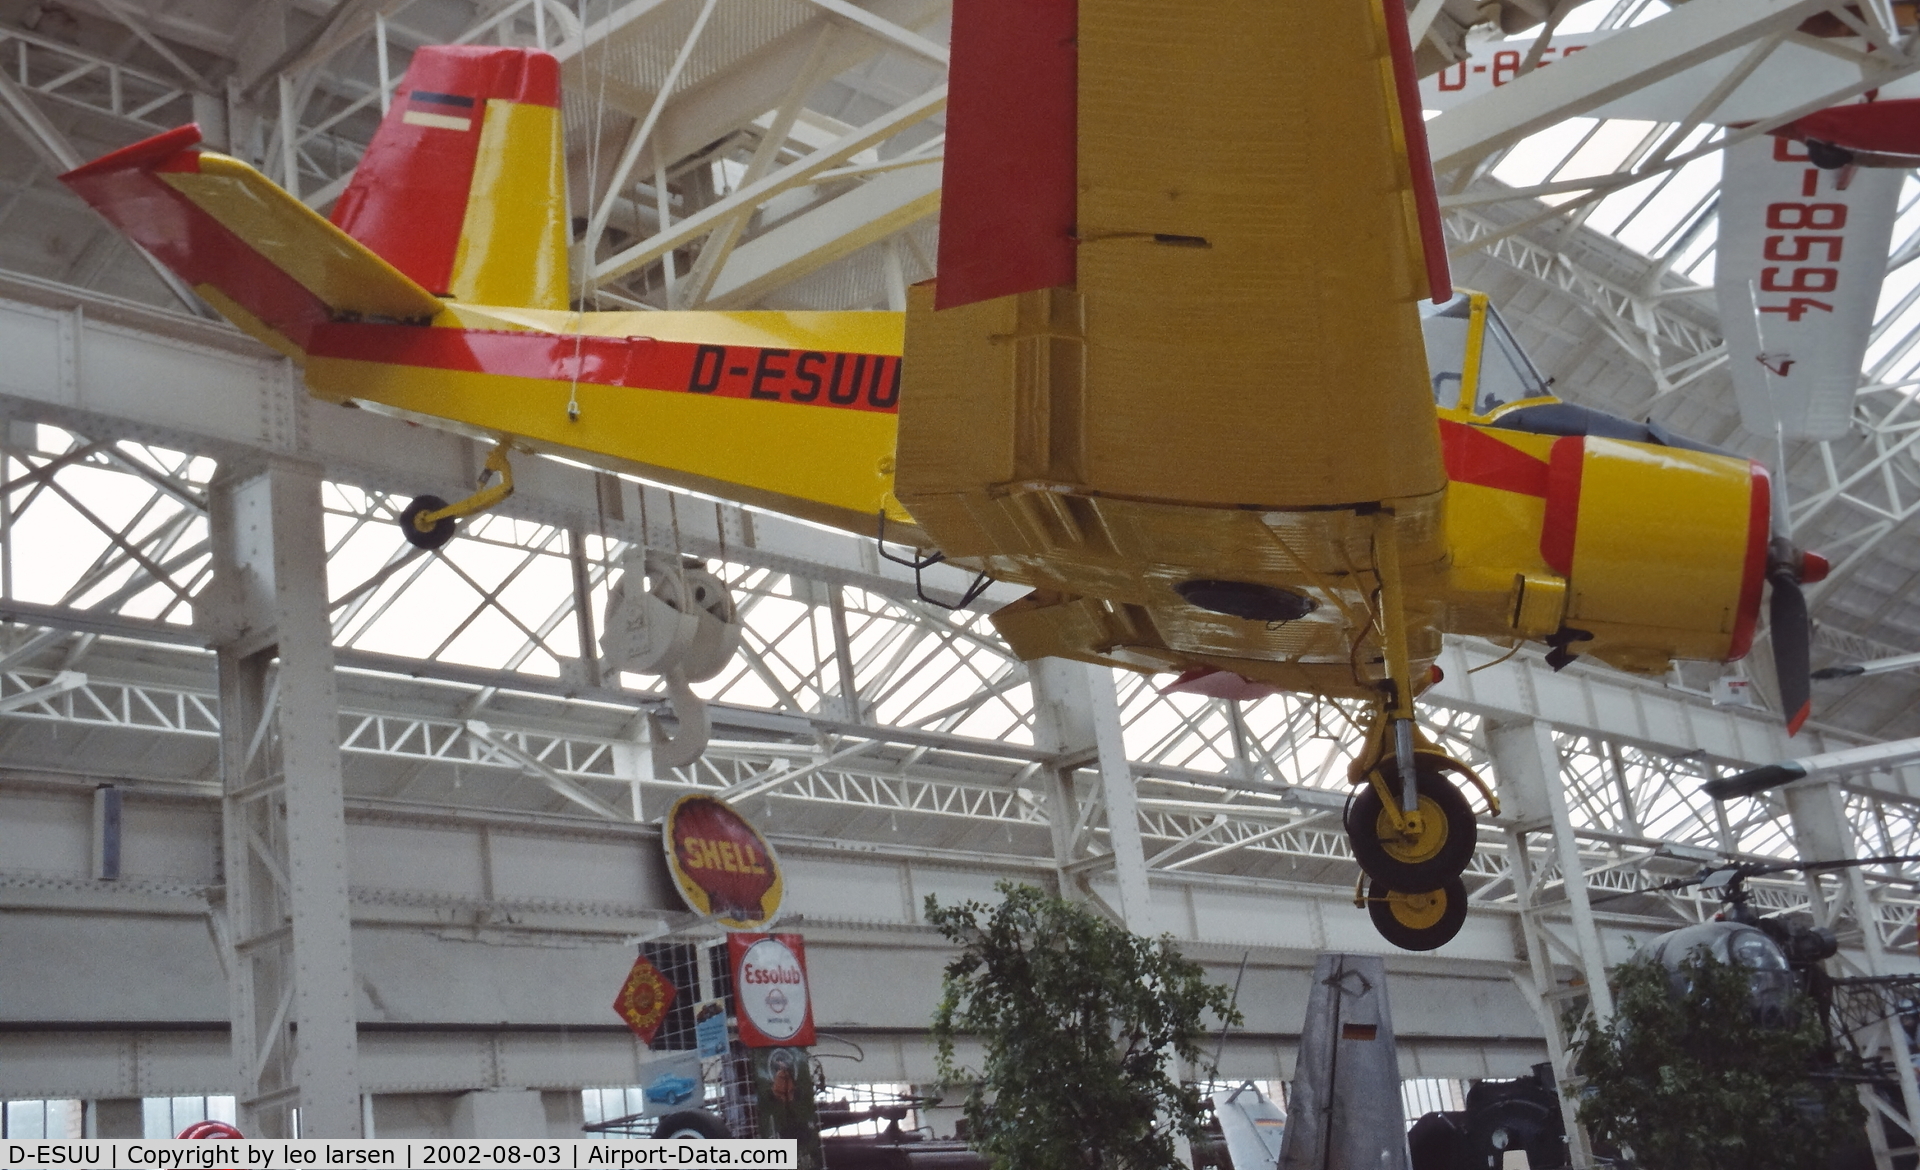 D-ESUU, 1974 Let Z-37A Cmelak C/N 19-18, Speyer Museum 3.8.2002